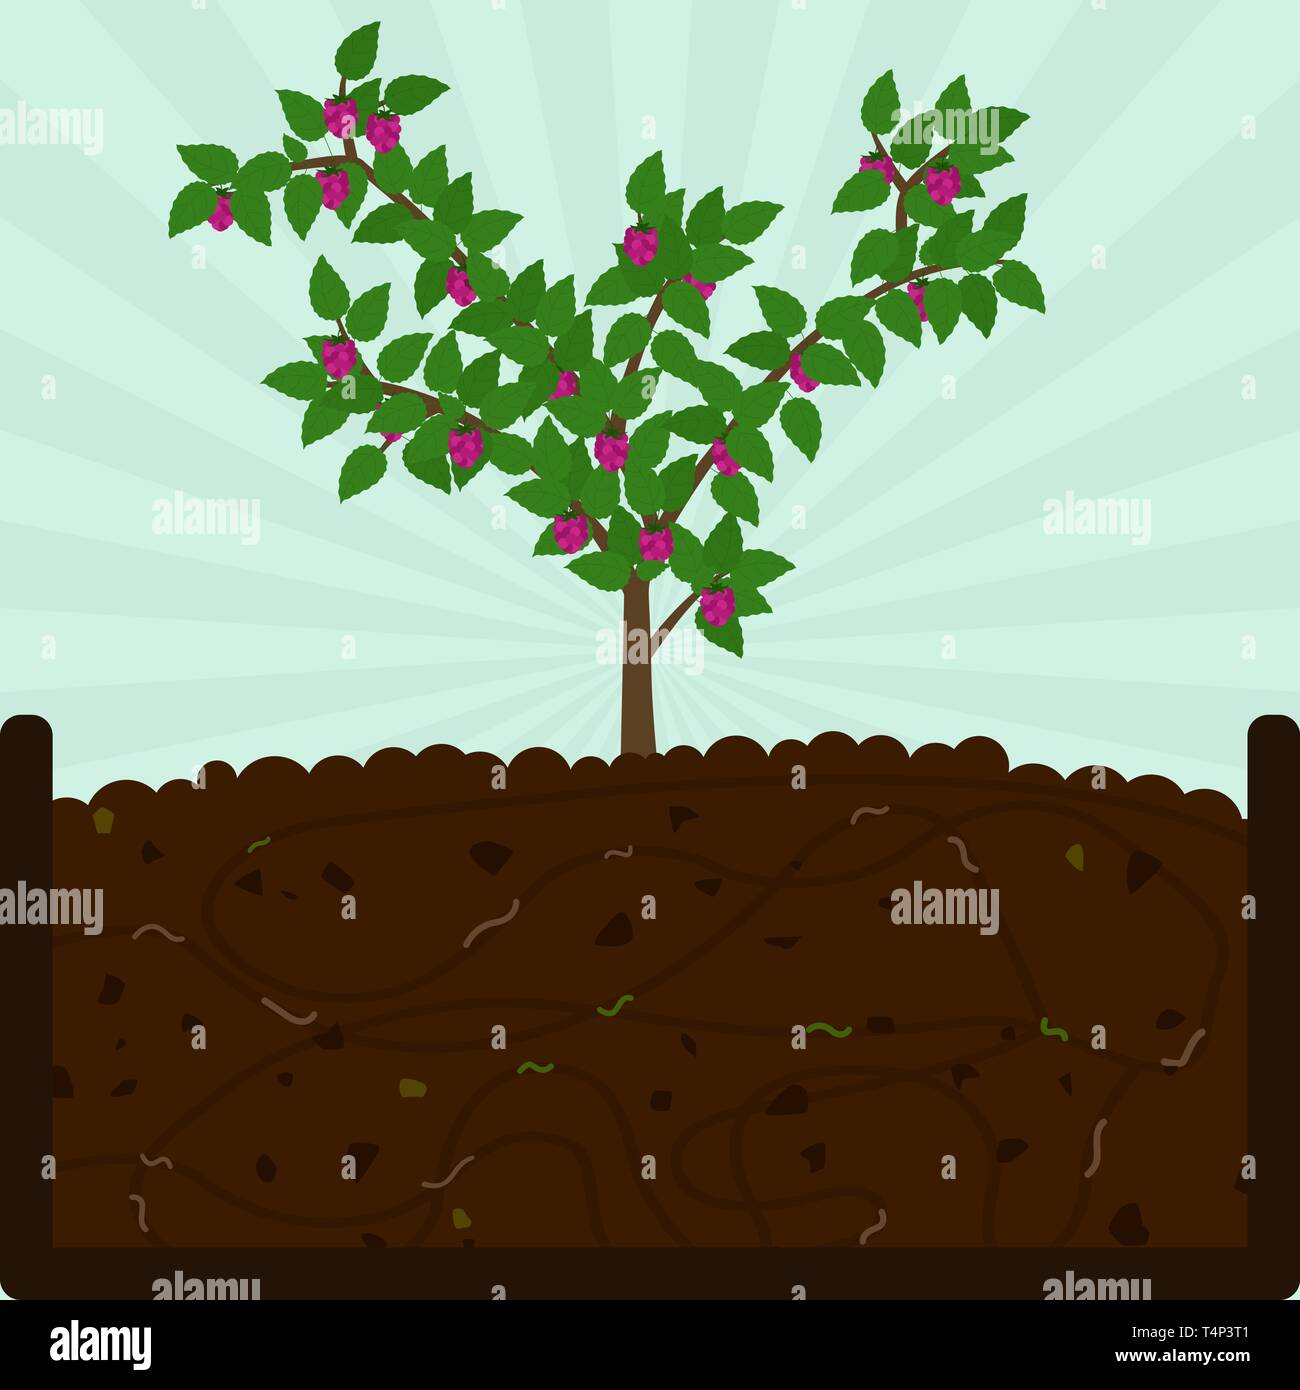 Himbeere pflanzen Obstbaum. Kompostierung mit organischen Stoffen, Mikroorganismen und Regenwürmer. Laub auf dem Boden. Stock Vektor